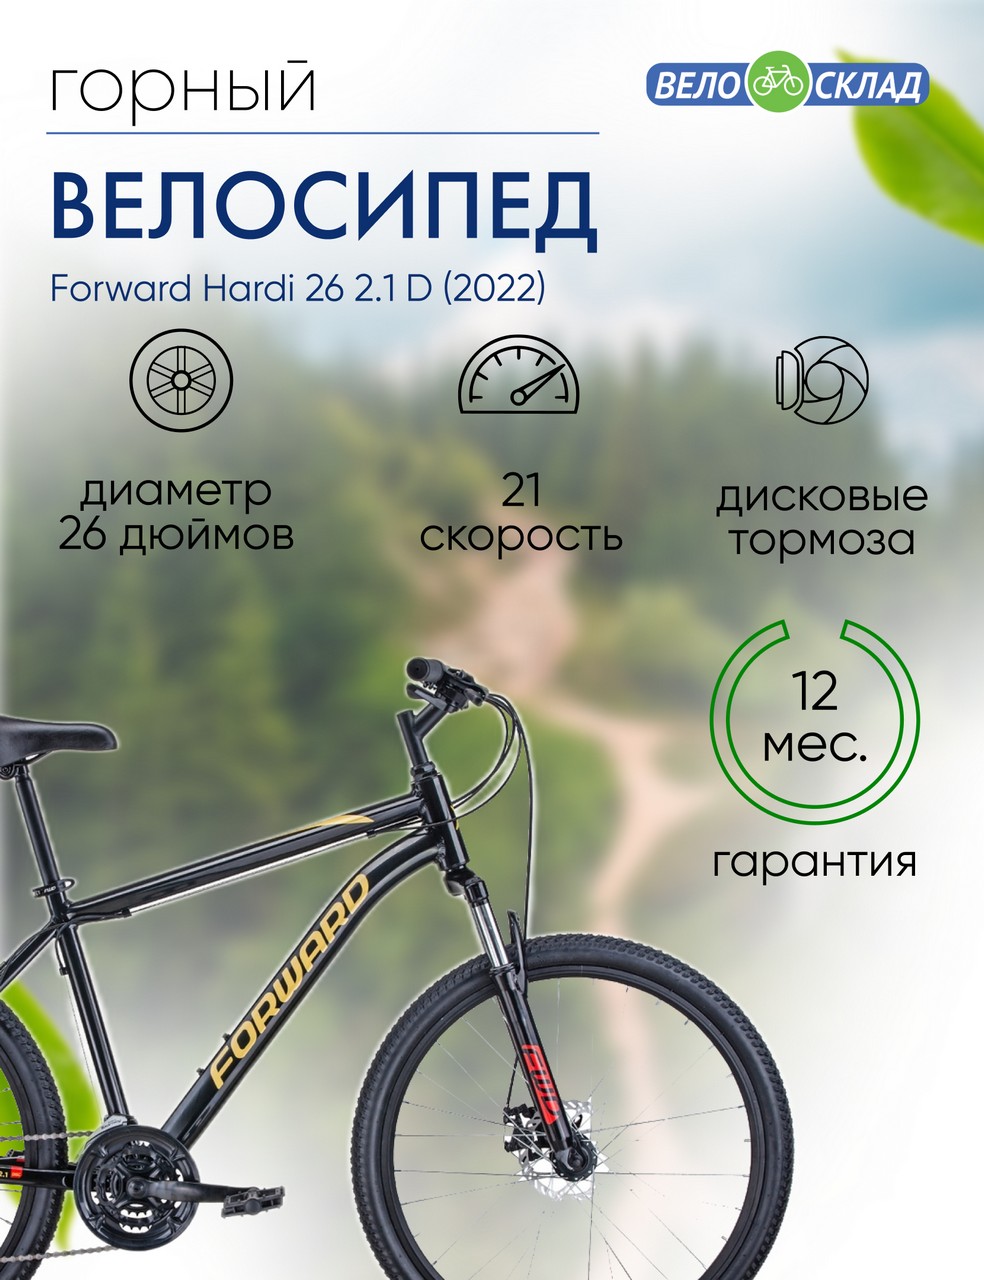 фото Горный велосипед forward hardi 26 2.1 d, год 2022, цвет черный-желтый, ростовка 18